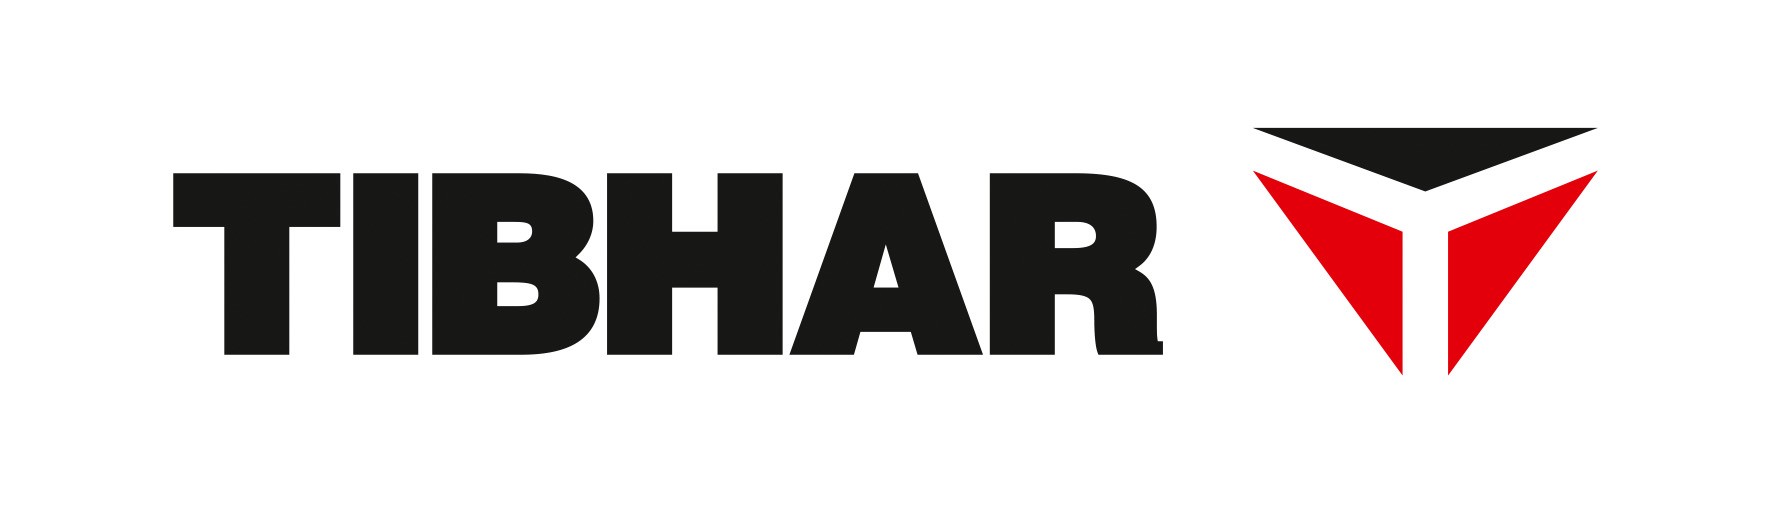 TIBHAR_Logo_2020_4C